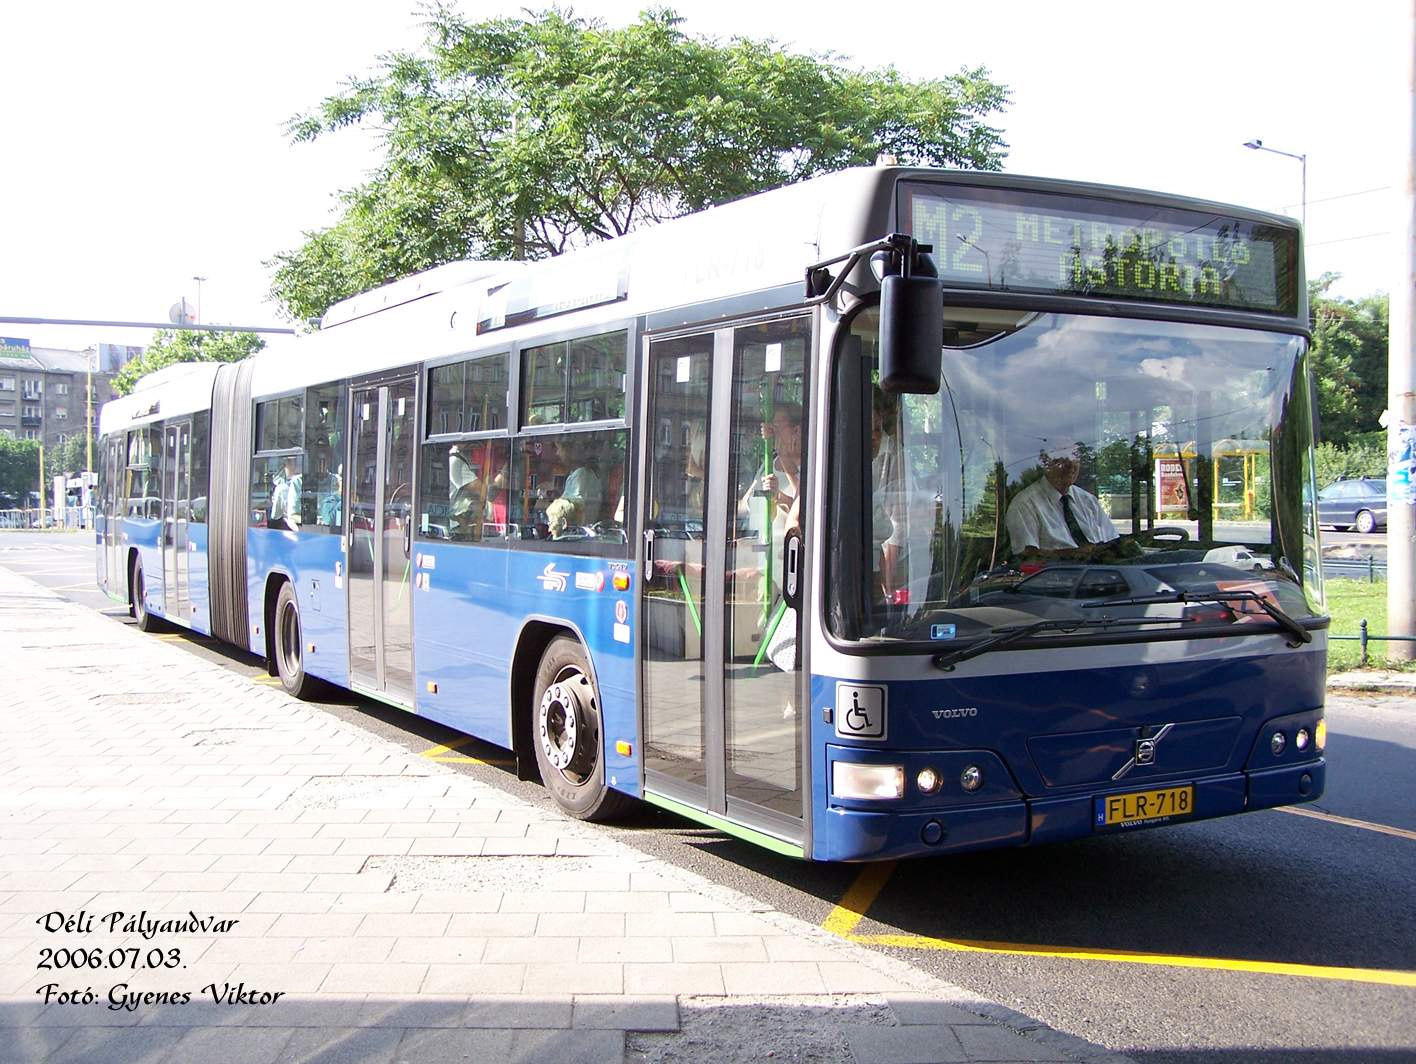 Busz FLR-718 2